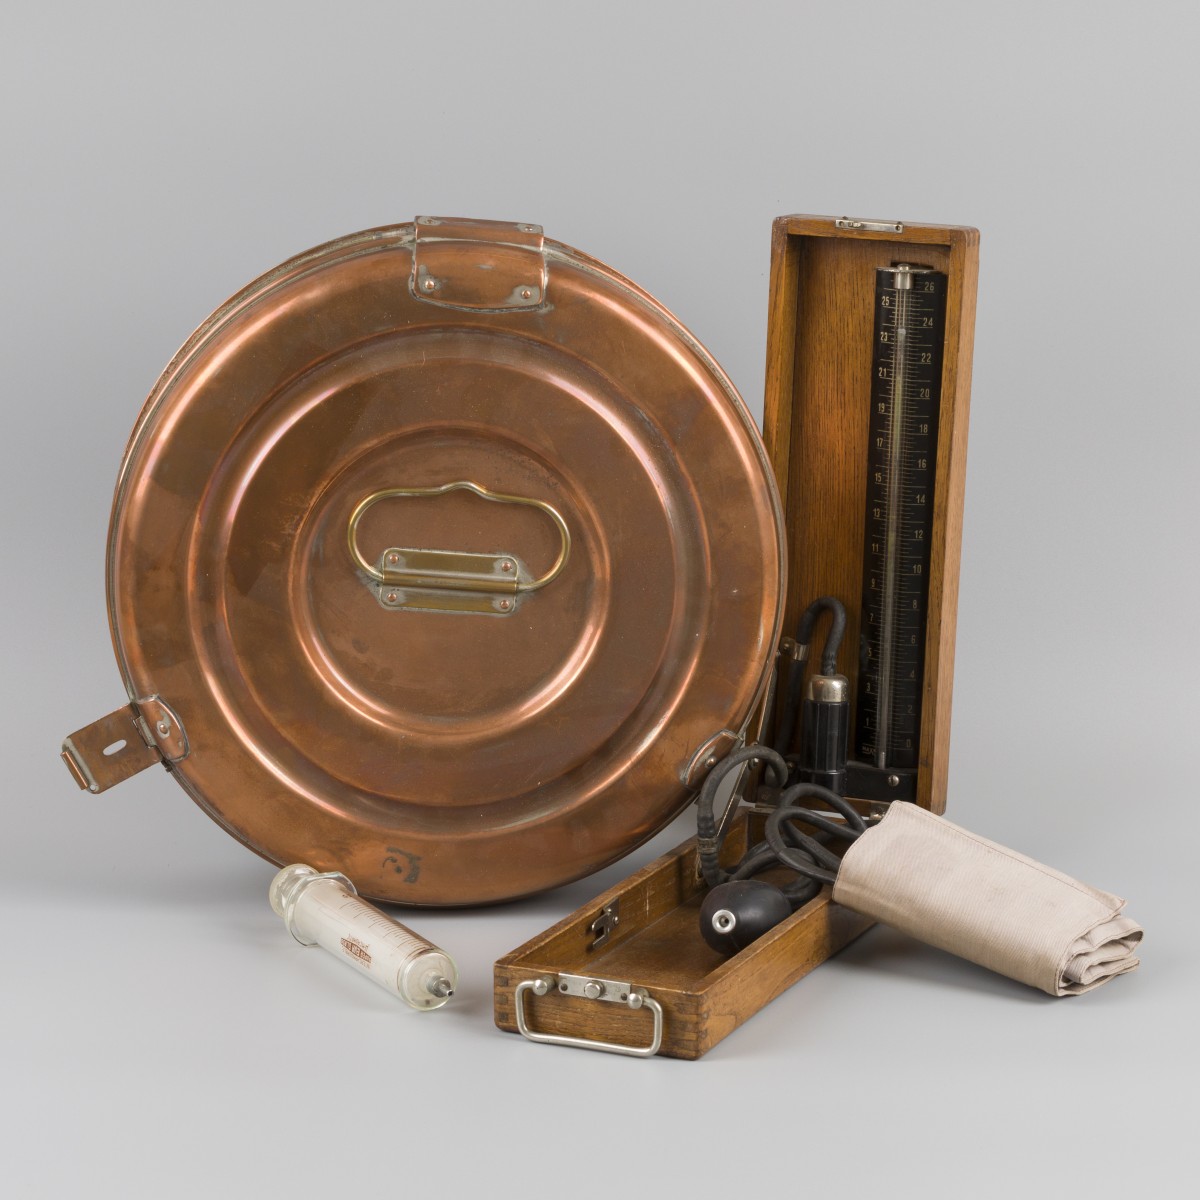 Een ronde messing sterilisatiedoos voor doktersinstrumenten met glazen spuit en bloeddrukmeter, medische instrumenten, 20e eeuw.